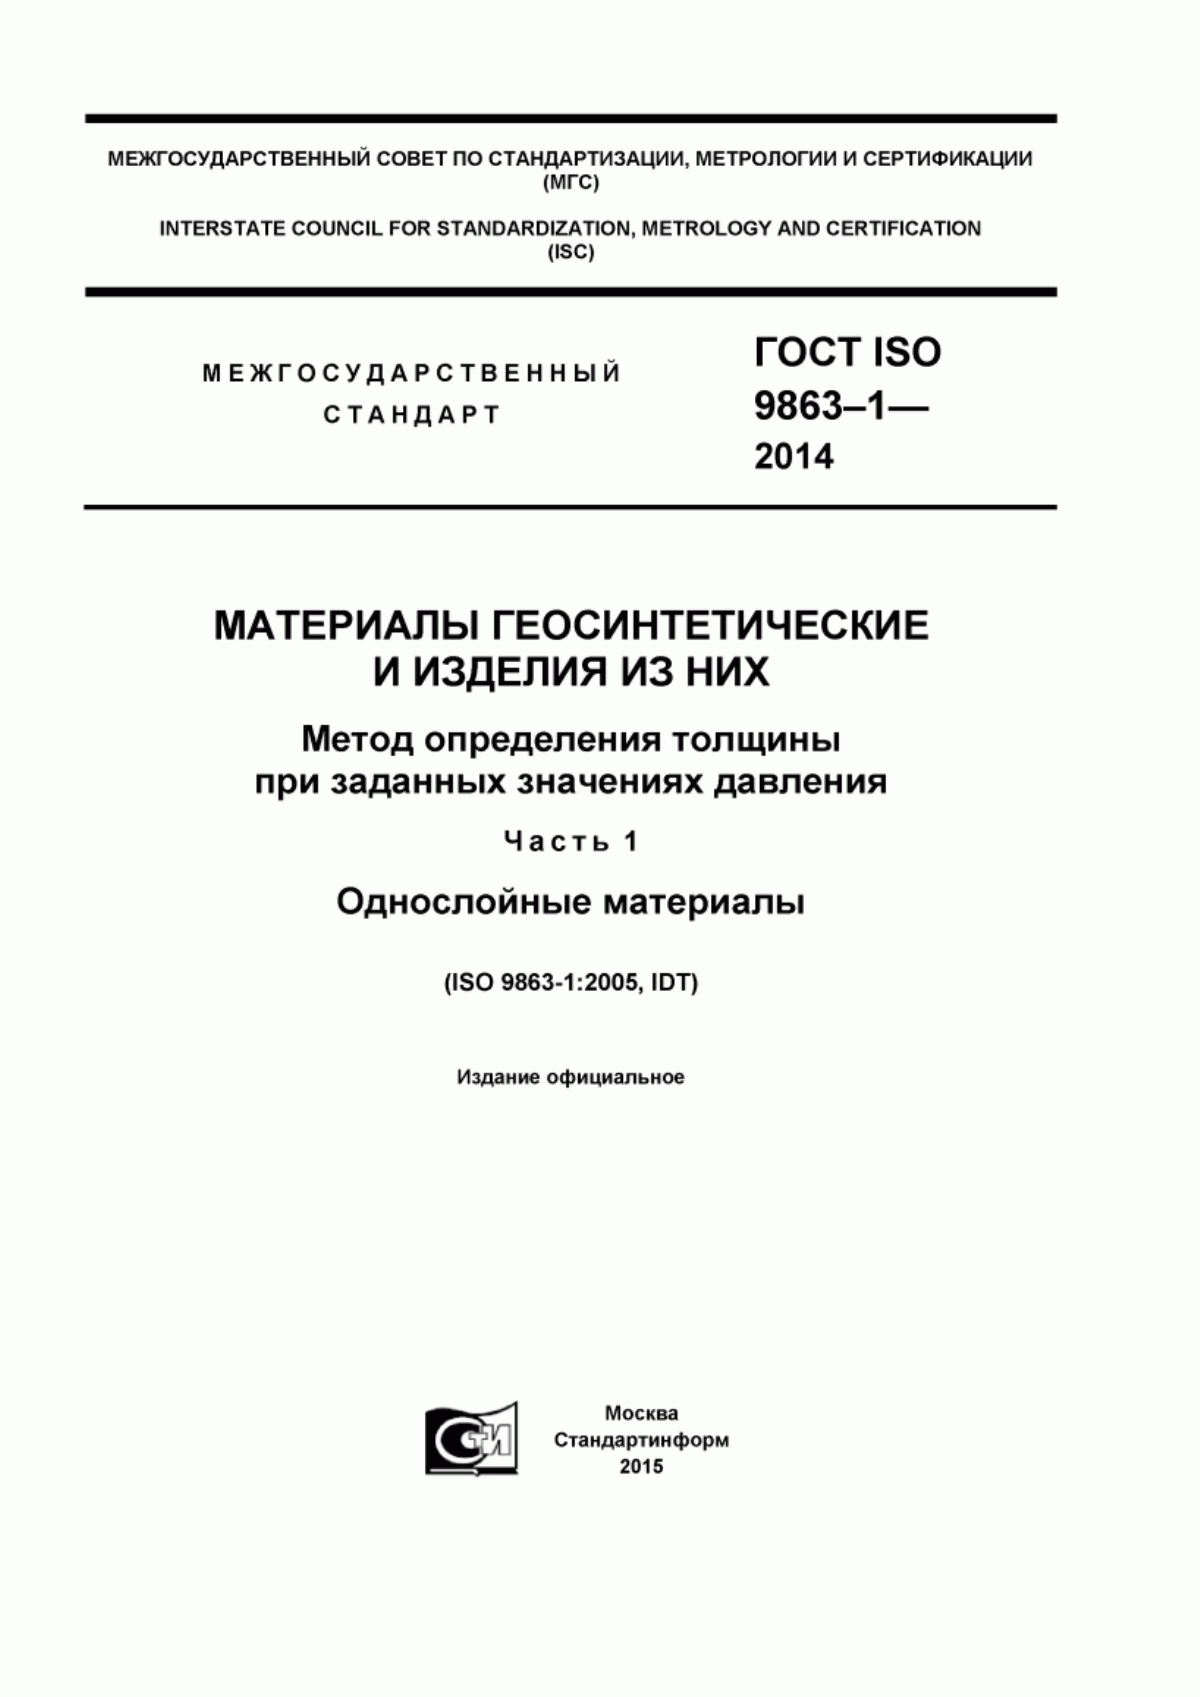 ГОСТ ISO 9863-1-2014 Материалы геосинтетические и изделия из них. Метод определения толщины при заданных значениях давления. Часть 1. Однослойные материалы